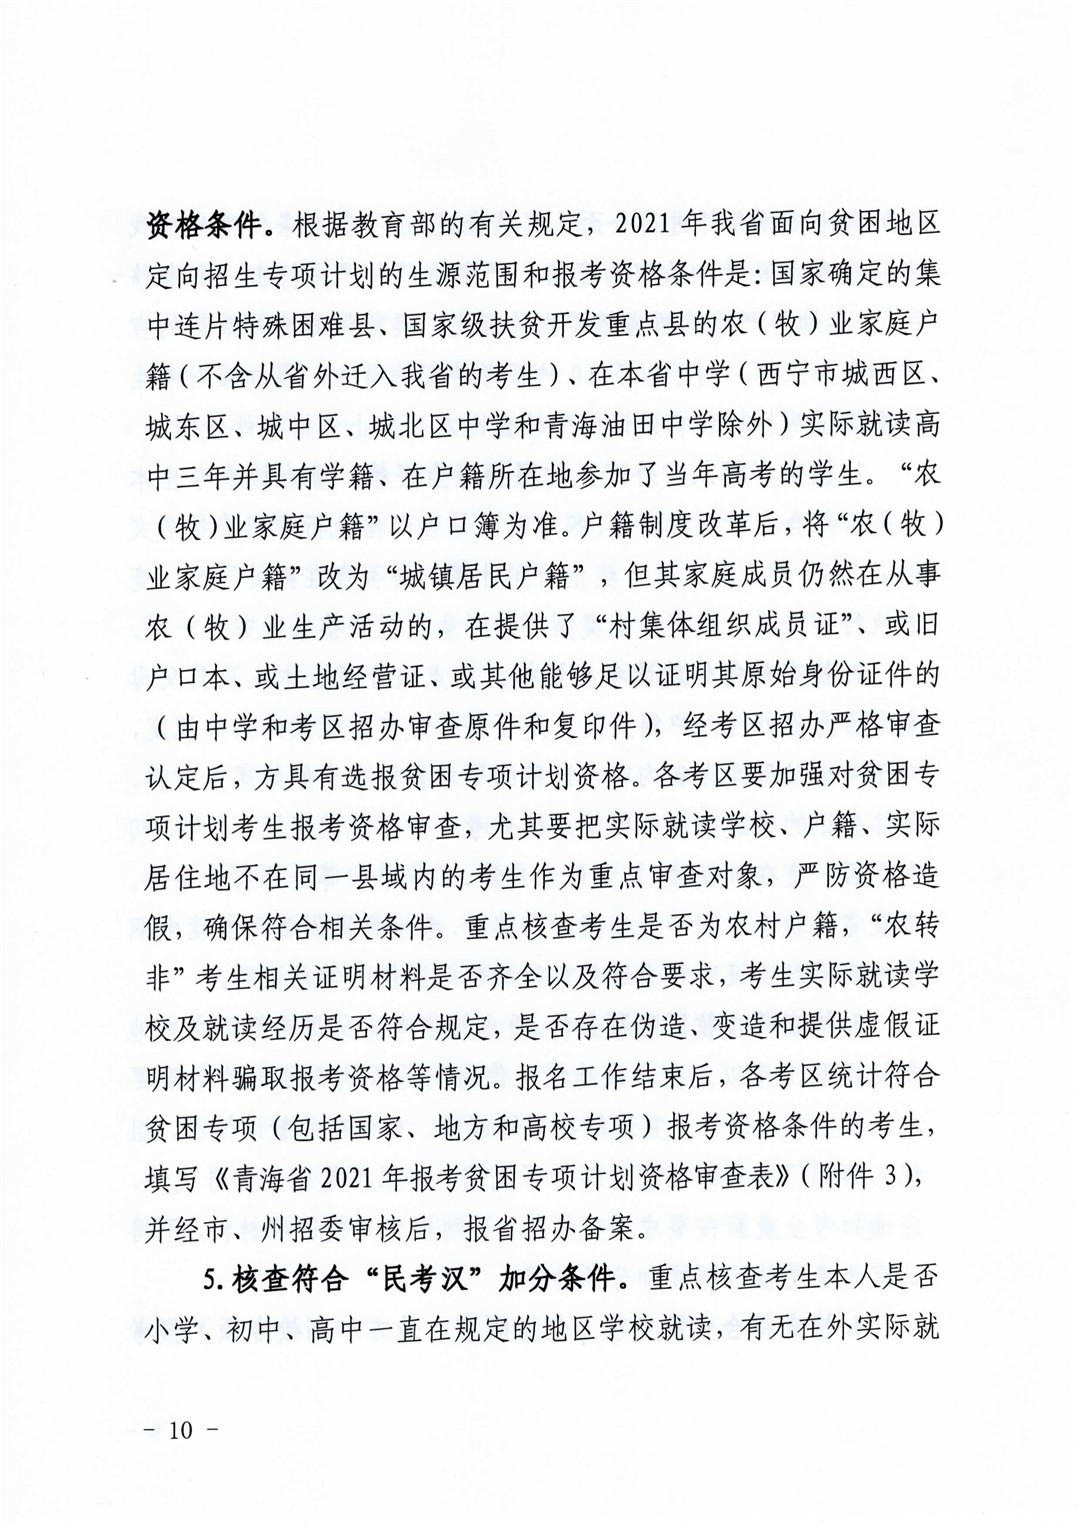 青海省高等学校招生委员会关于做好2021年普通高考报名工作的通知